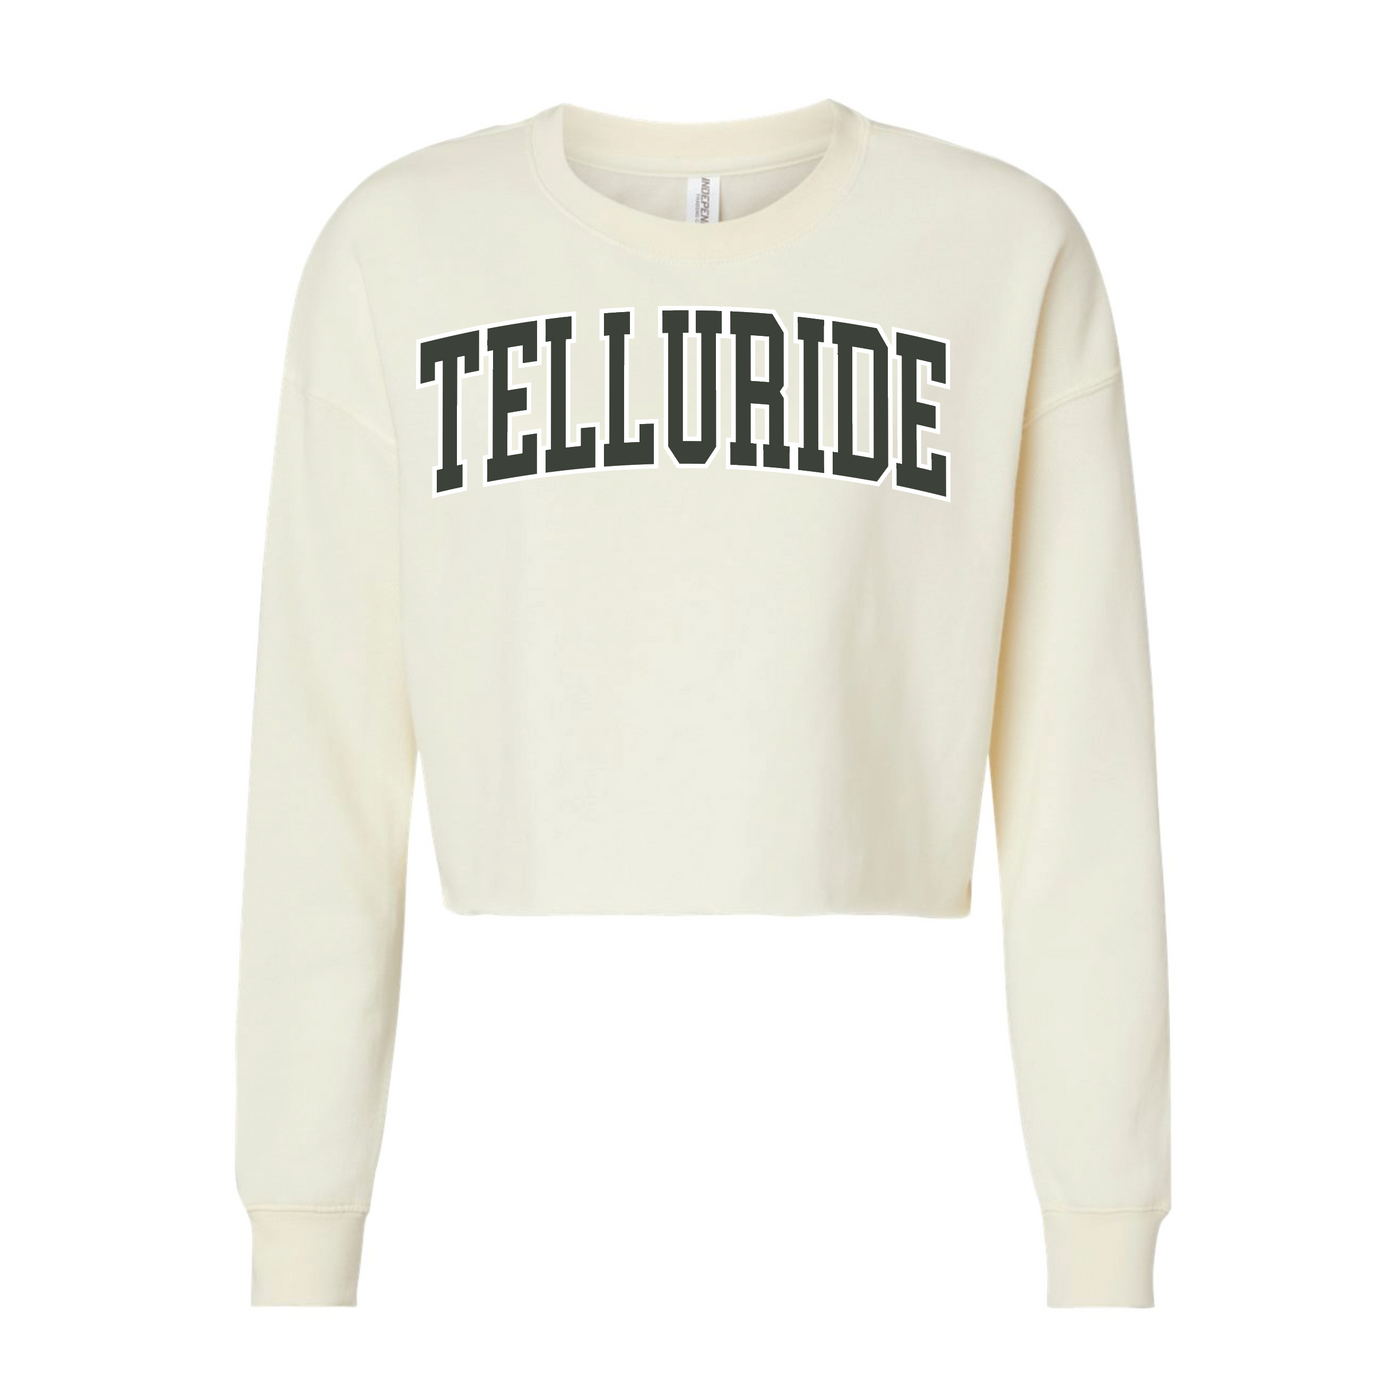 Telluride Crop Top Sweatshirt